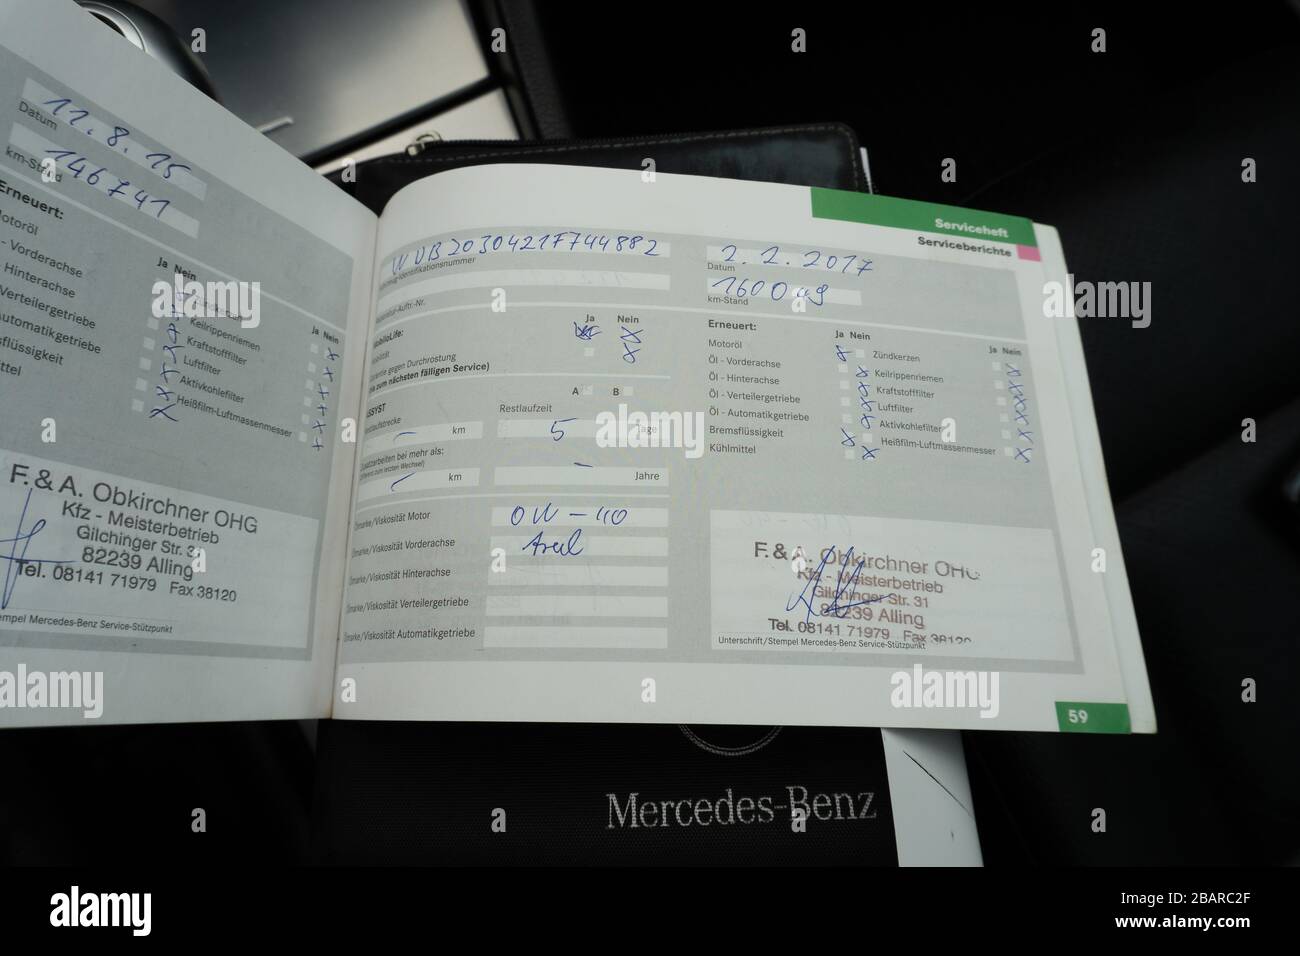 Mercedes Benz Service-Historie Buch-planmäßige Wartung, Überprüfung von  Motorfehlern, Reparatur- und Wartungsprotokollen Stockfotografie - Alamy